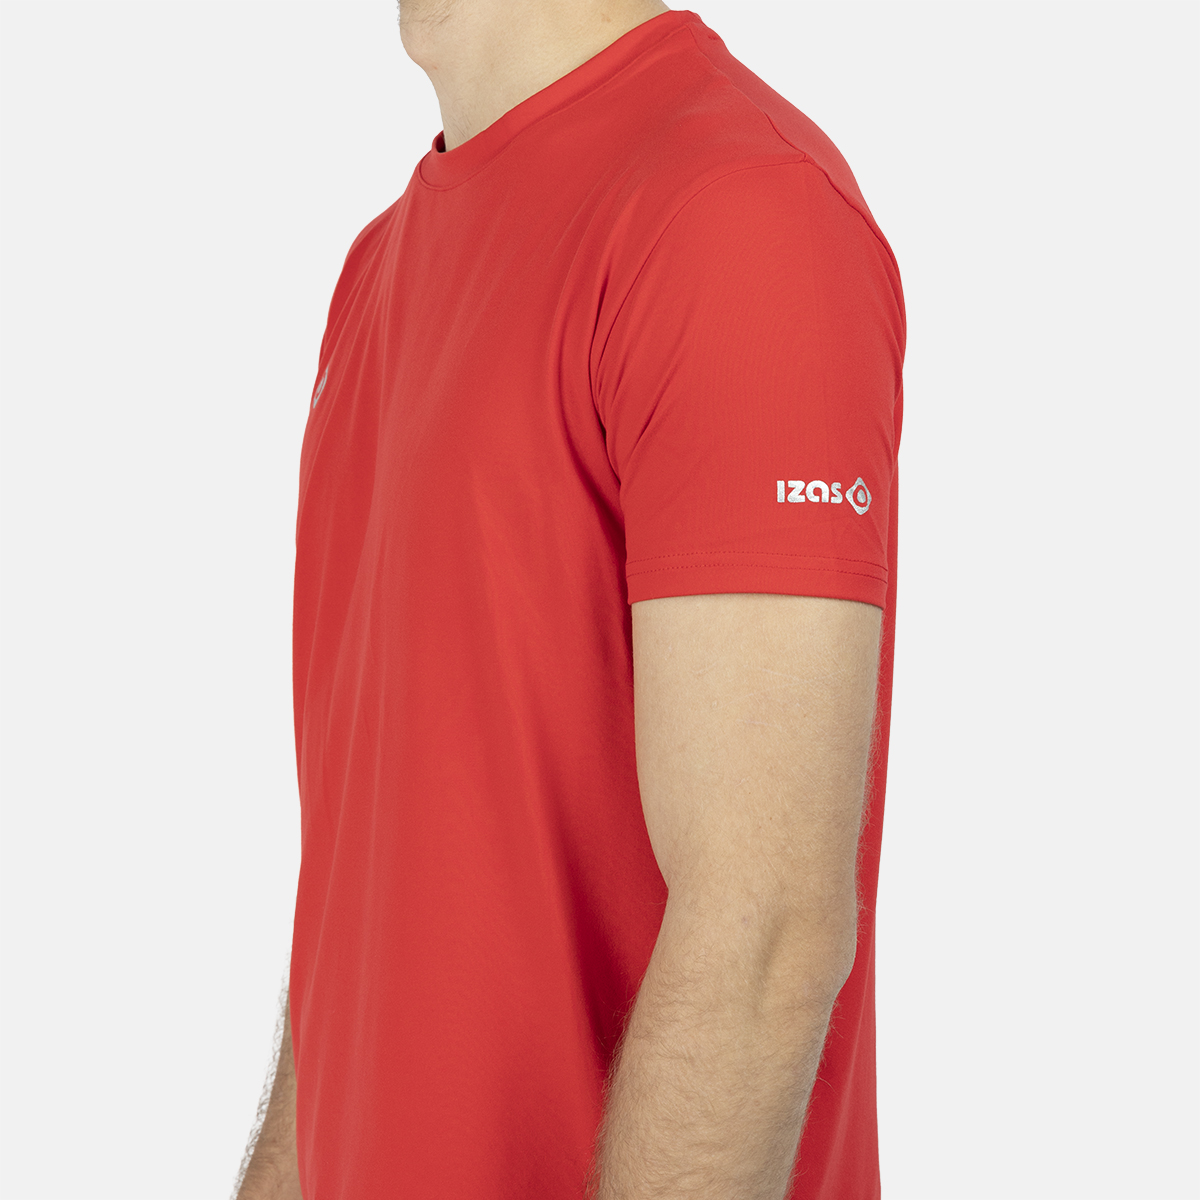  chemise de homme eu rouge anyox